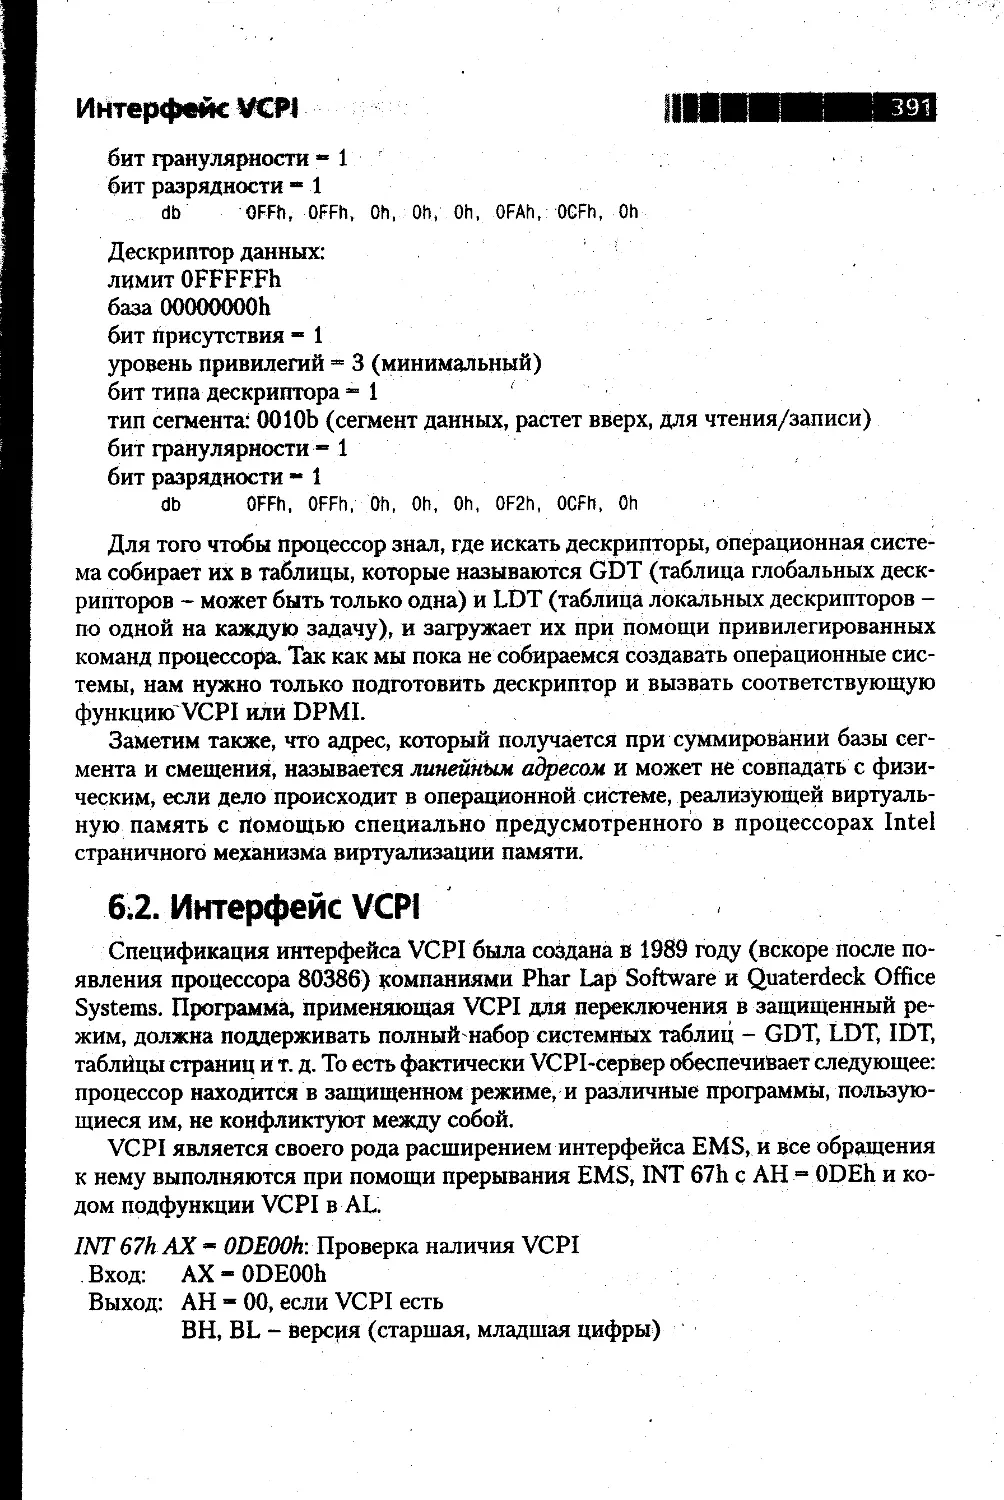 6.2. Интерфейс VCPI 391